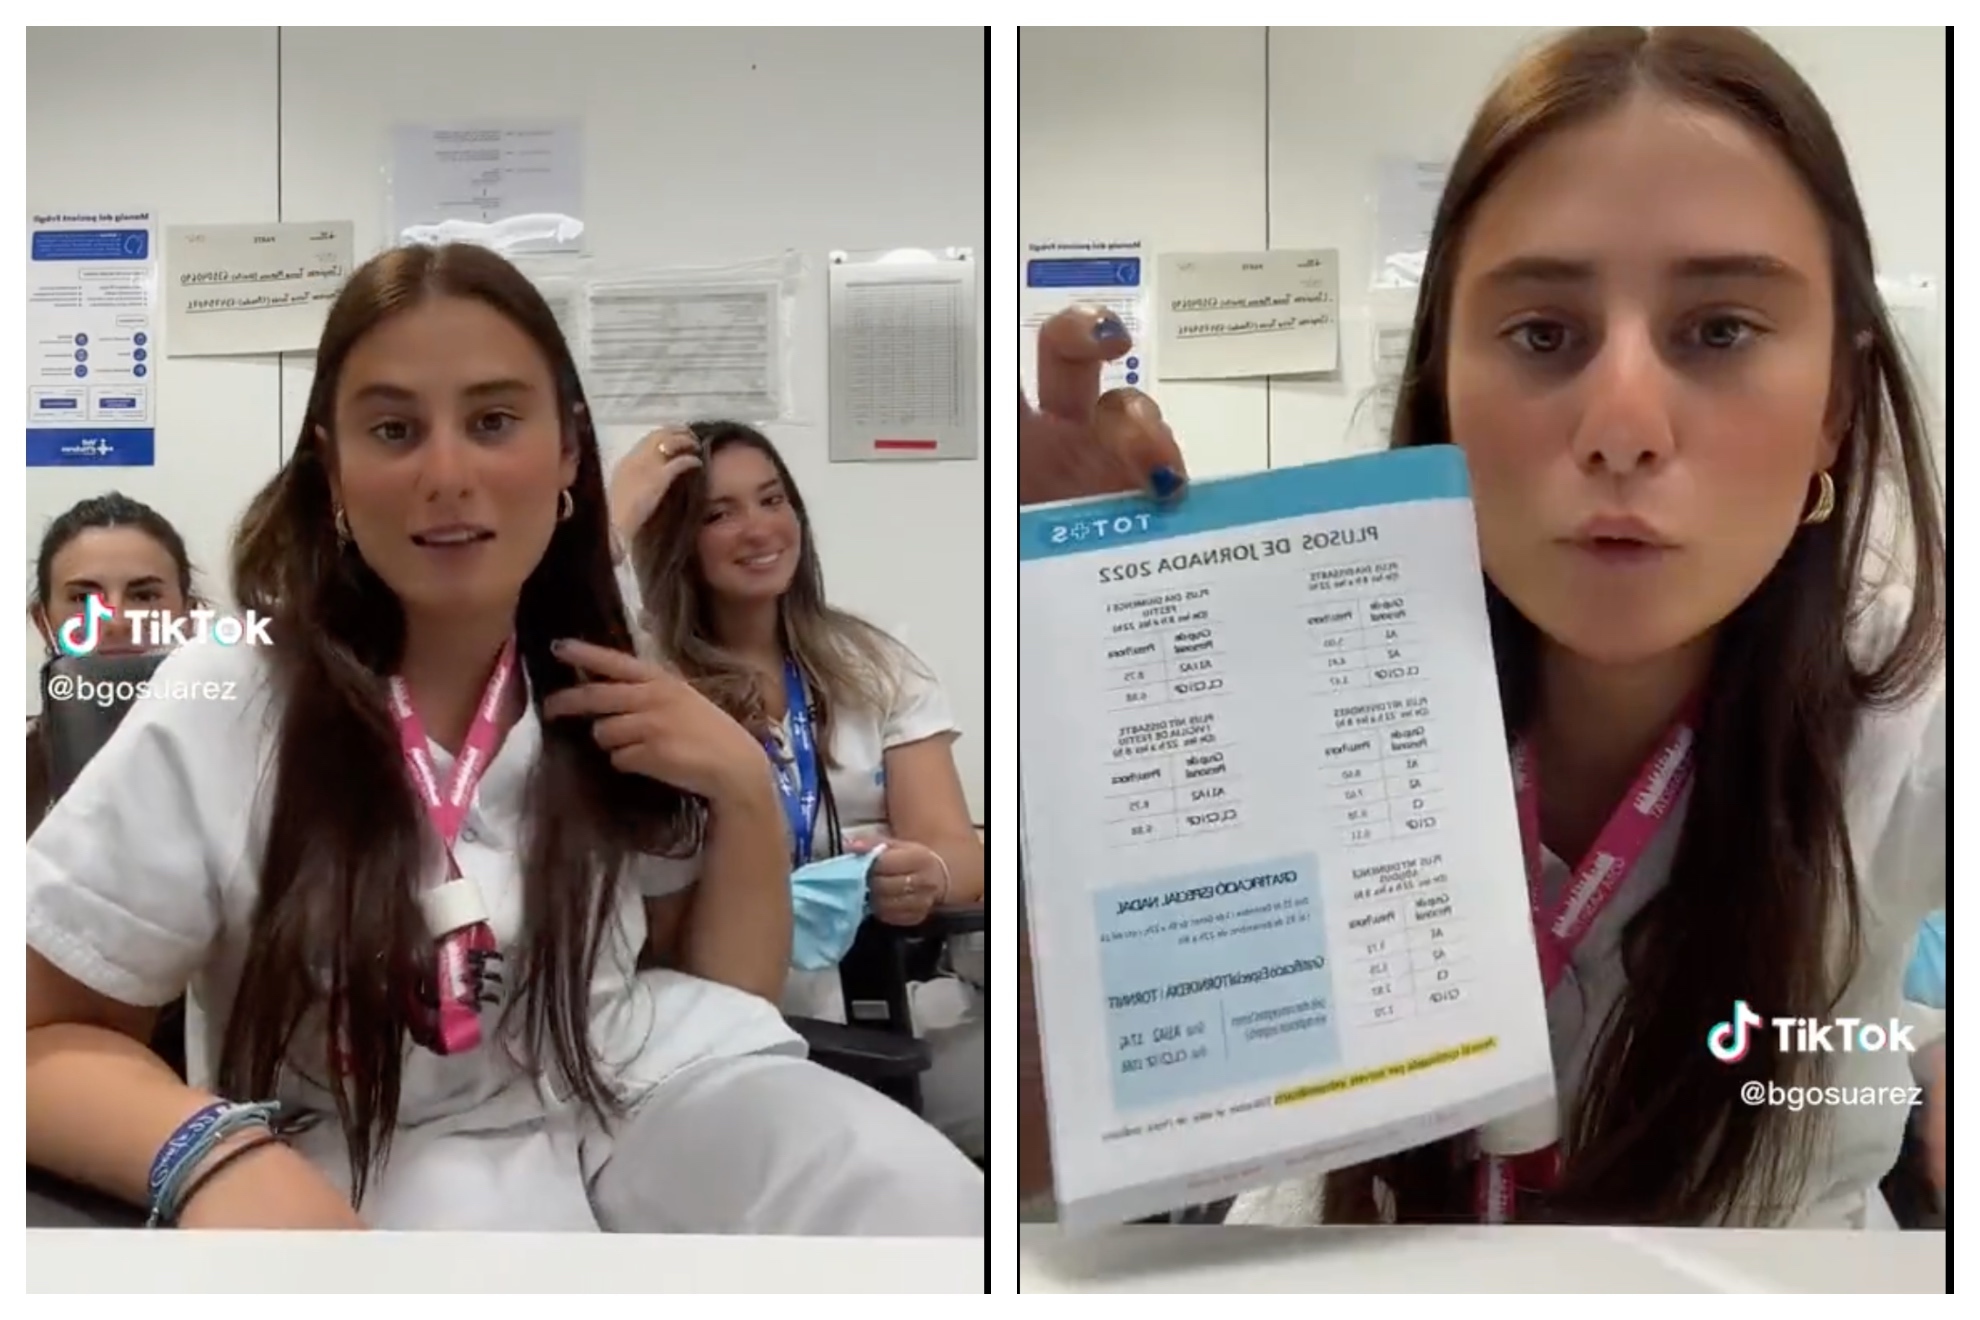 Una joven se queja del cataln obligatorio para las oposiciones a enfermera y le llueven las crticas